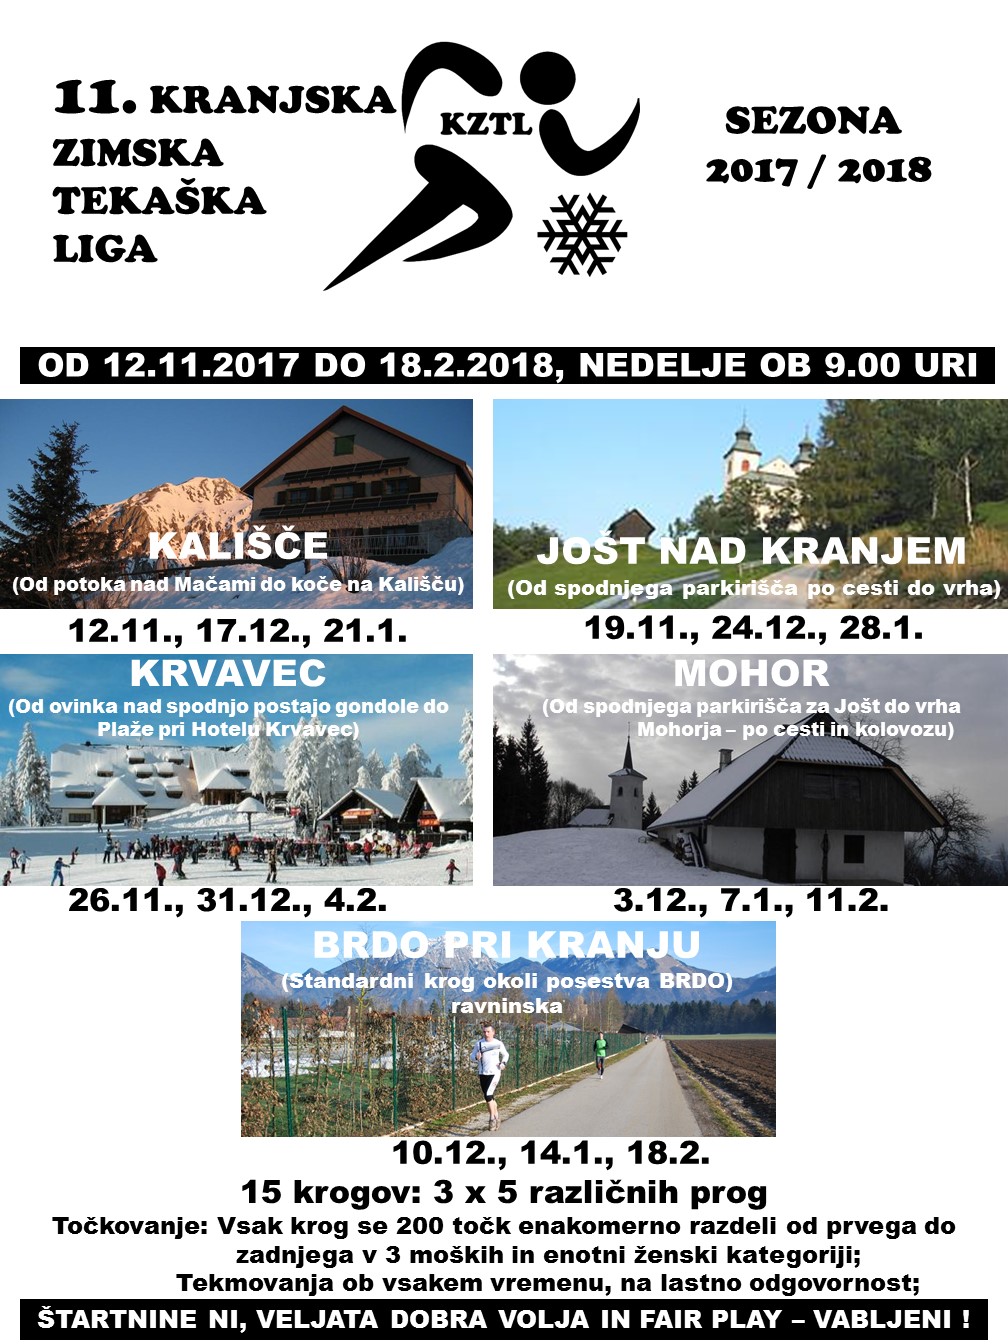 KRANJSKA ZIMSKA TEKAŠKA LIGA 2017-2018.jpg